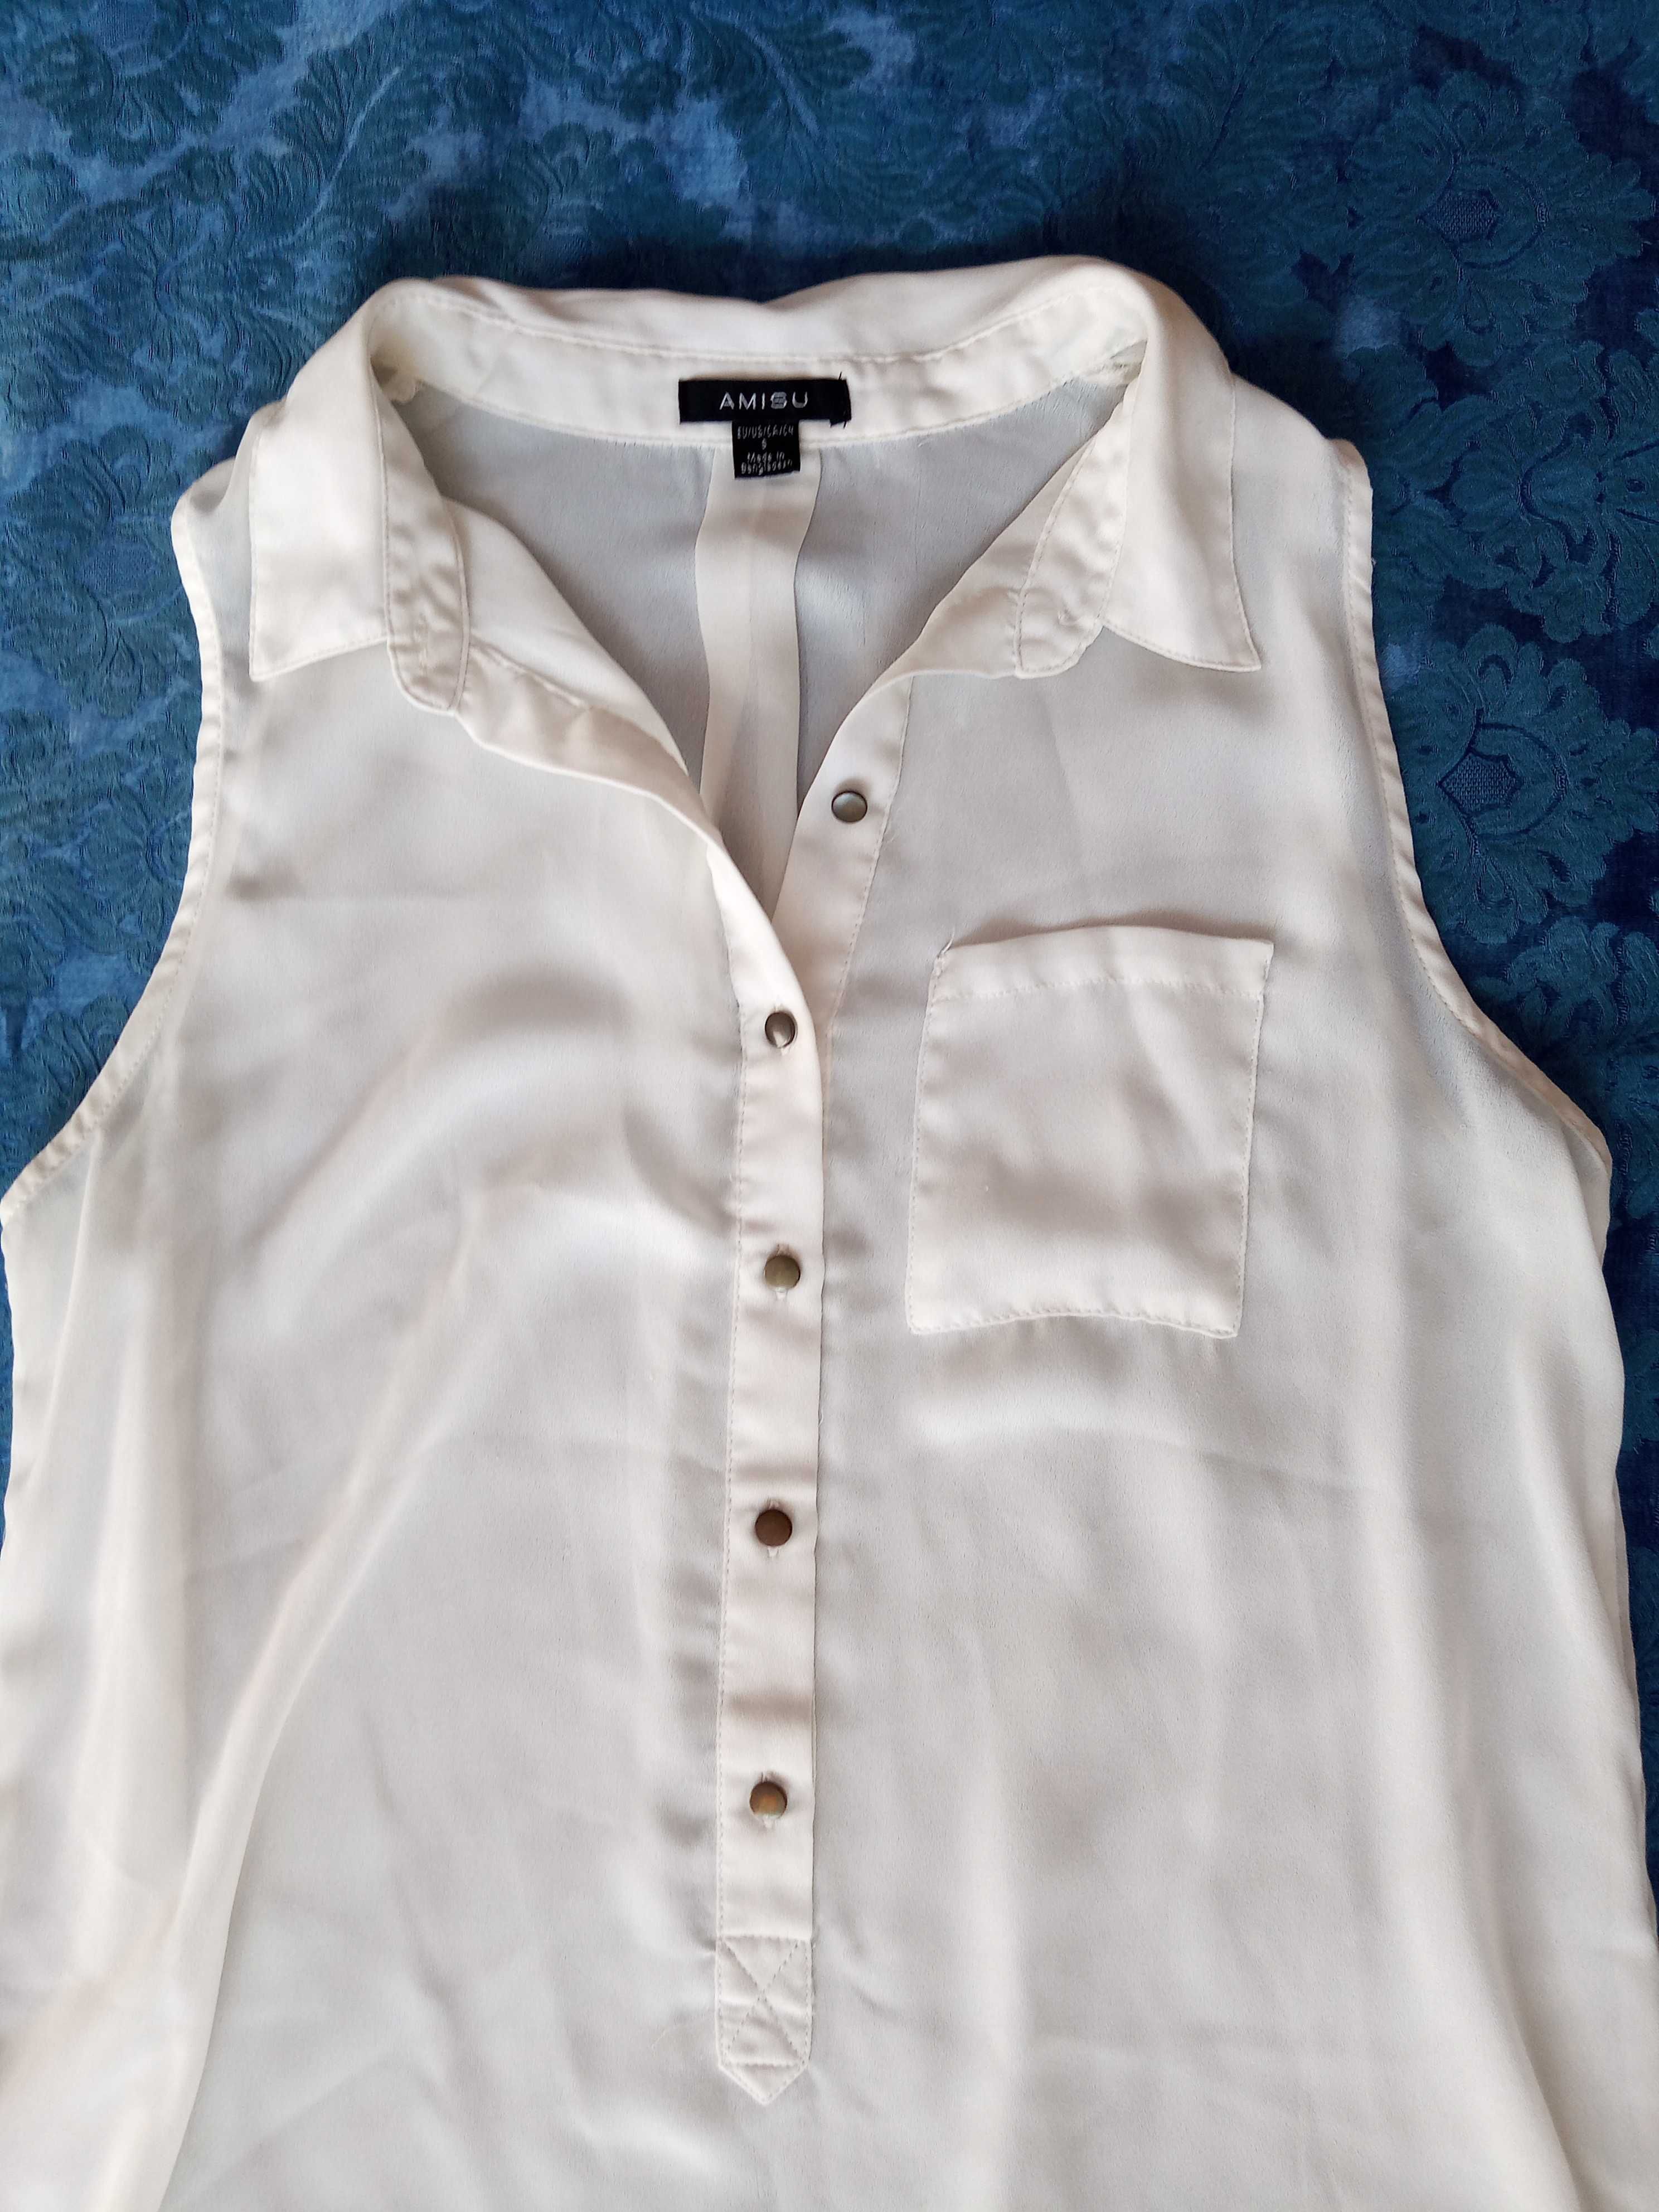 Bluzka damska AMISU; biała tunika bezrękawnik; r. 8, 34-36